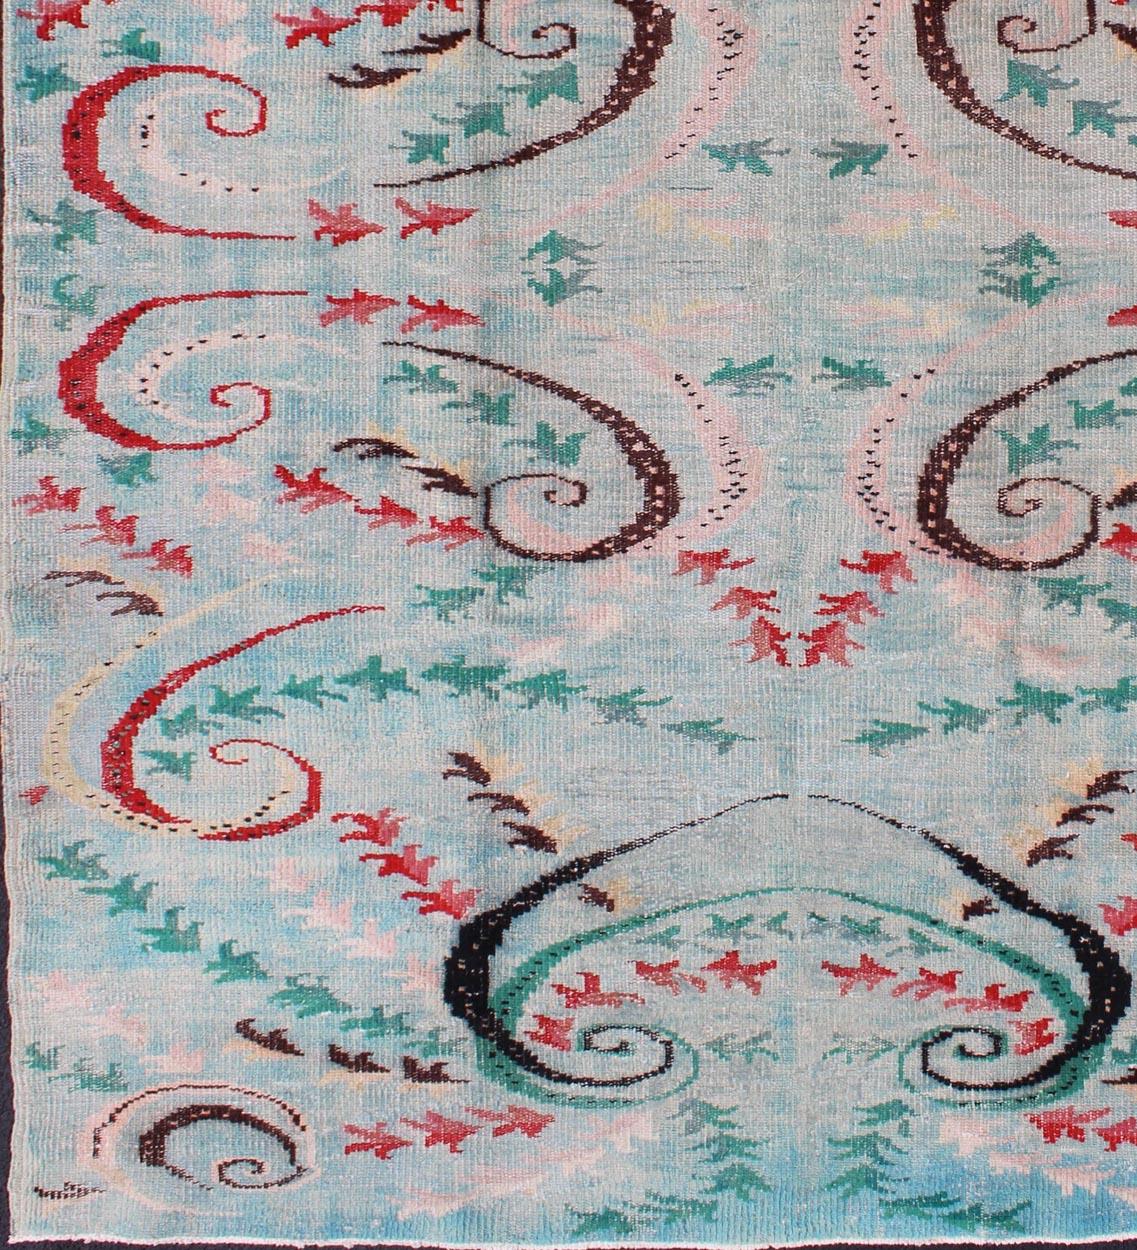 Moderner Teppich aus der Jahrhundertmitte in Blautönen mit Akzentfarben in Schwarz und Rosa, Teppich/ tu-mtu-136058,  Moderner Teppich aus der Jahrhundertmitte in Blautönen mit Akzentfarben in Rot, Schwarz, Rosa, Grün und Braun.
Dieser Mid-Century